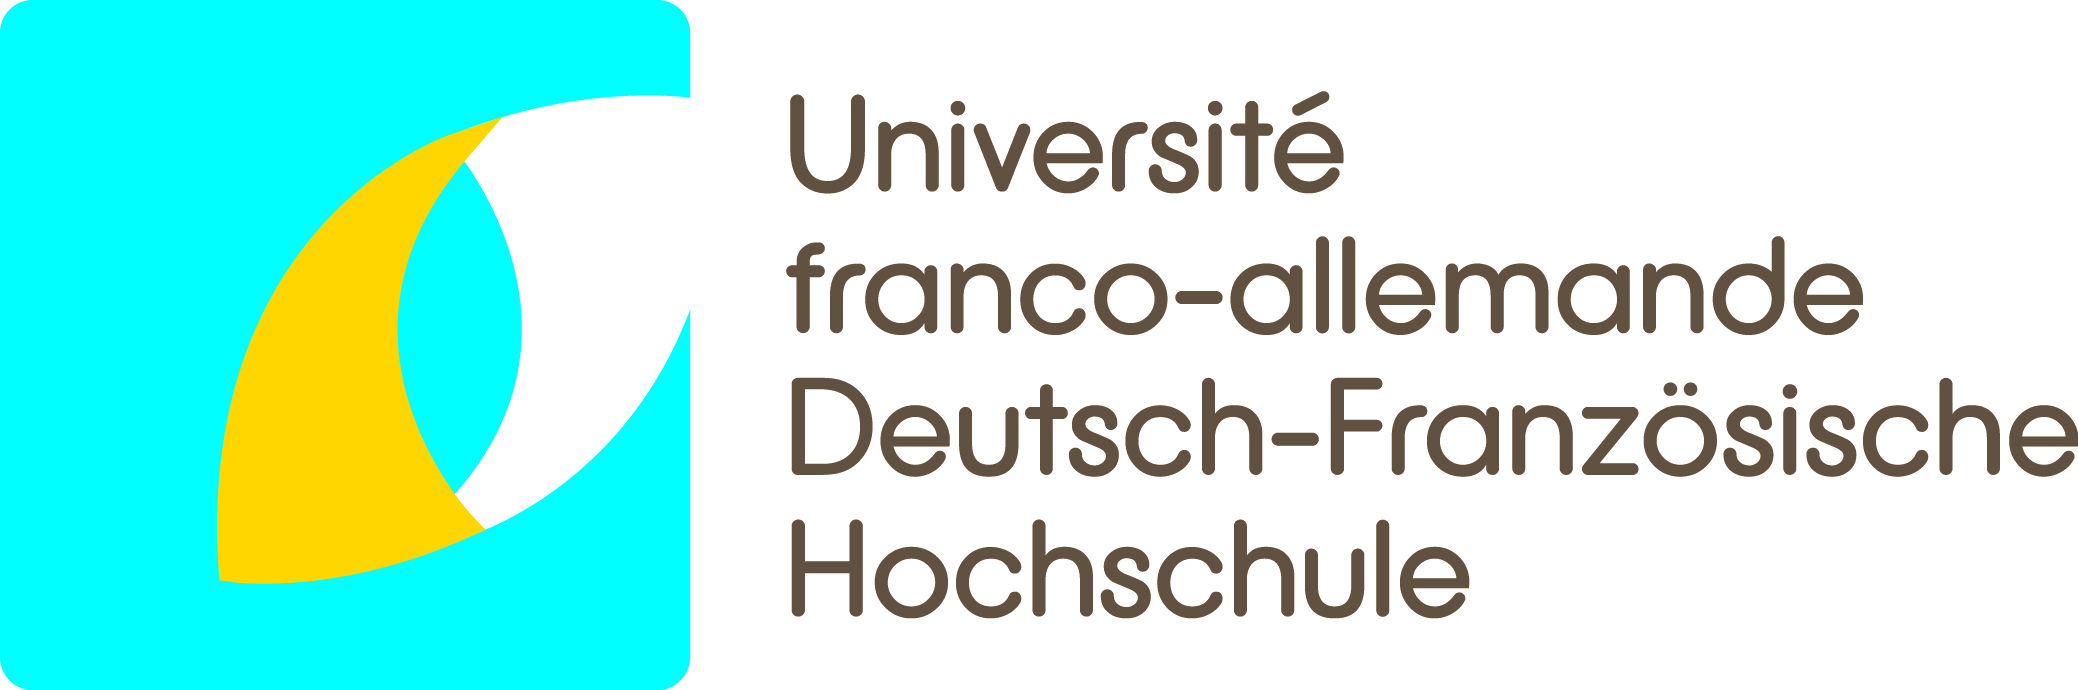 {{ Deutsch-Französische Hochschule}}